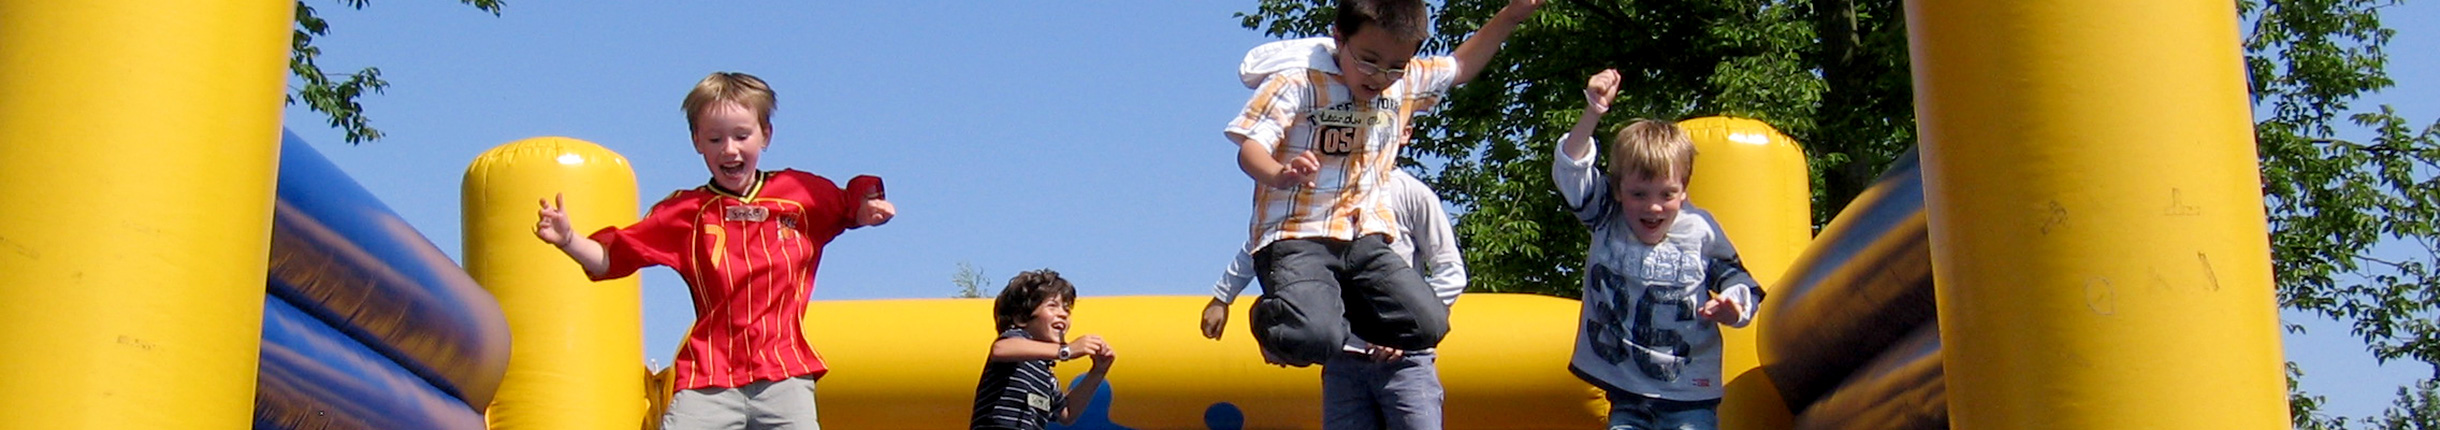 Kinder springen auf einer Hüpfburg wild umher